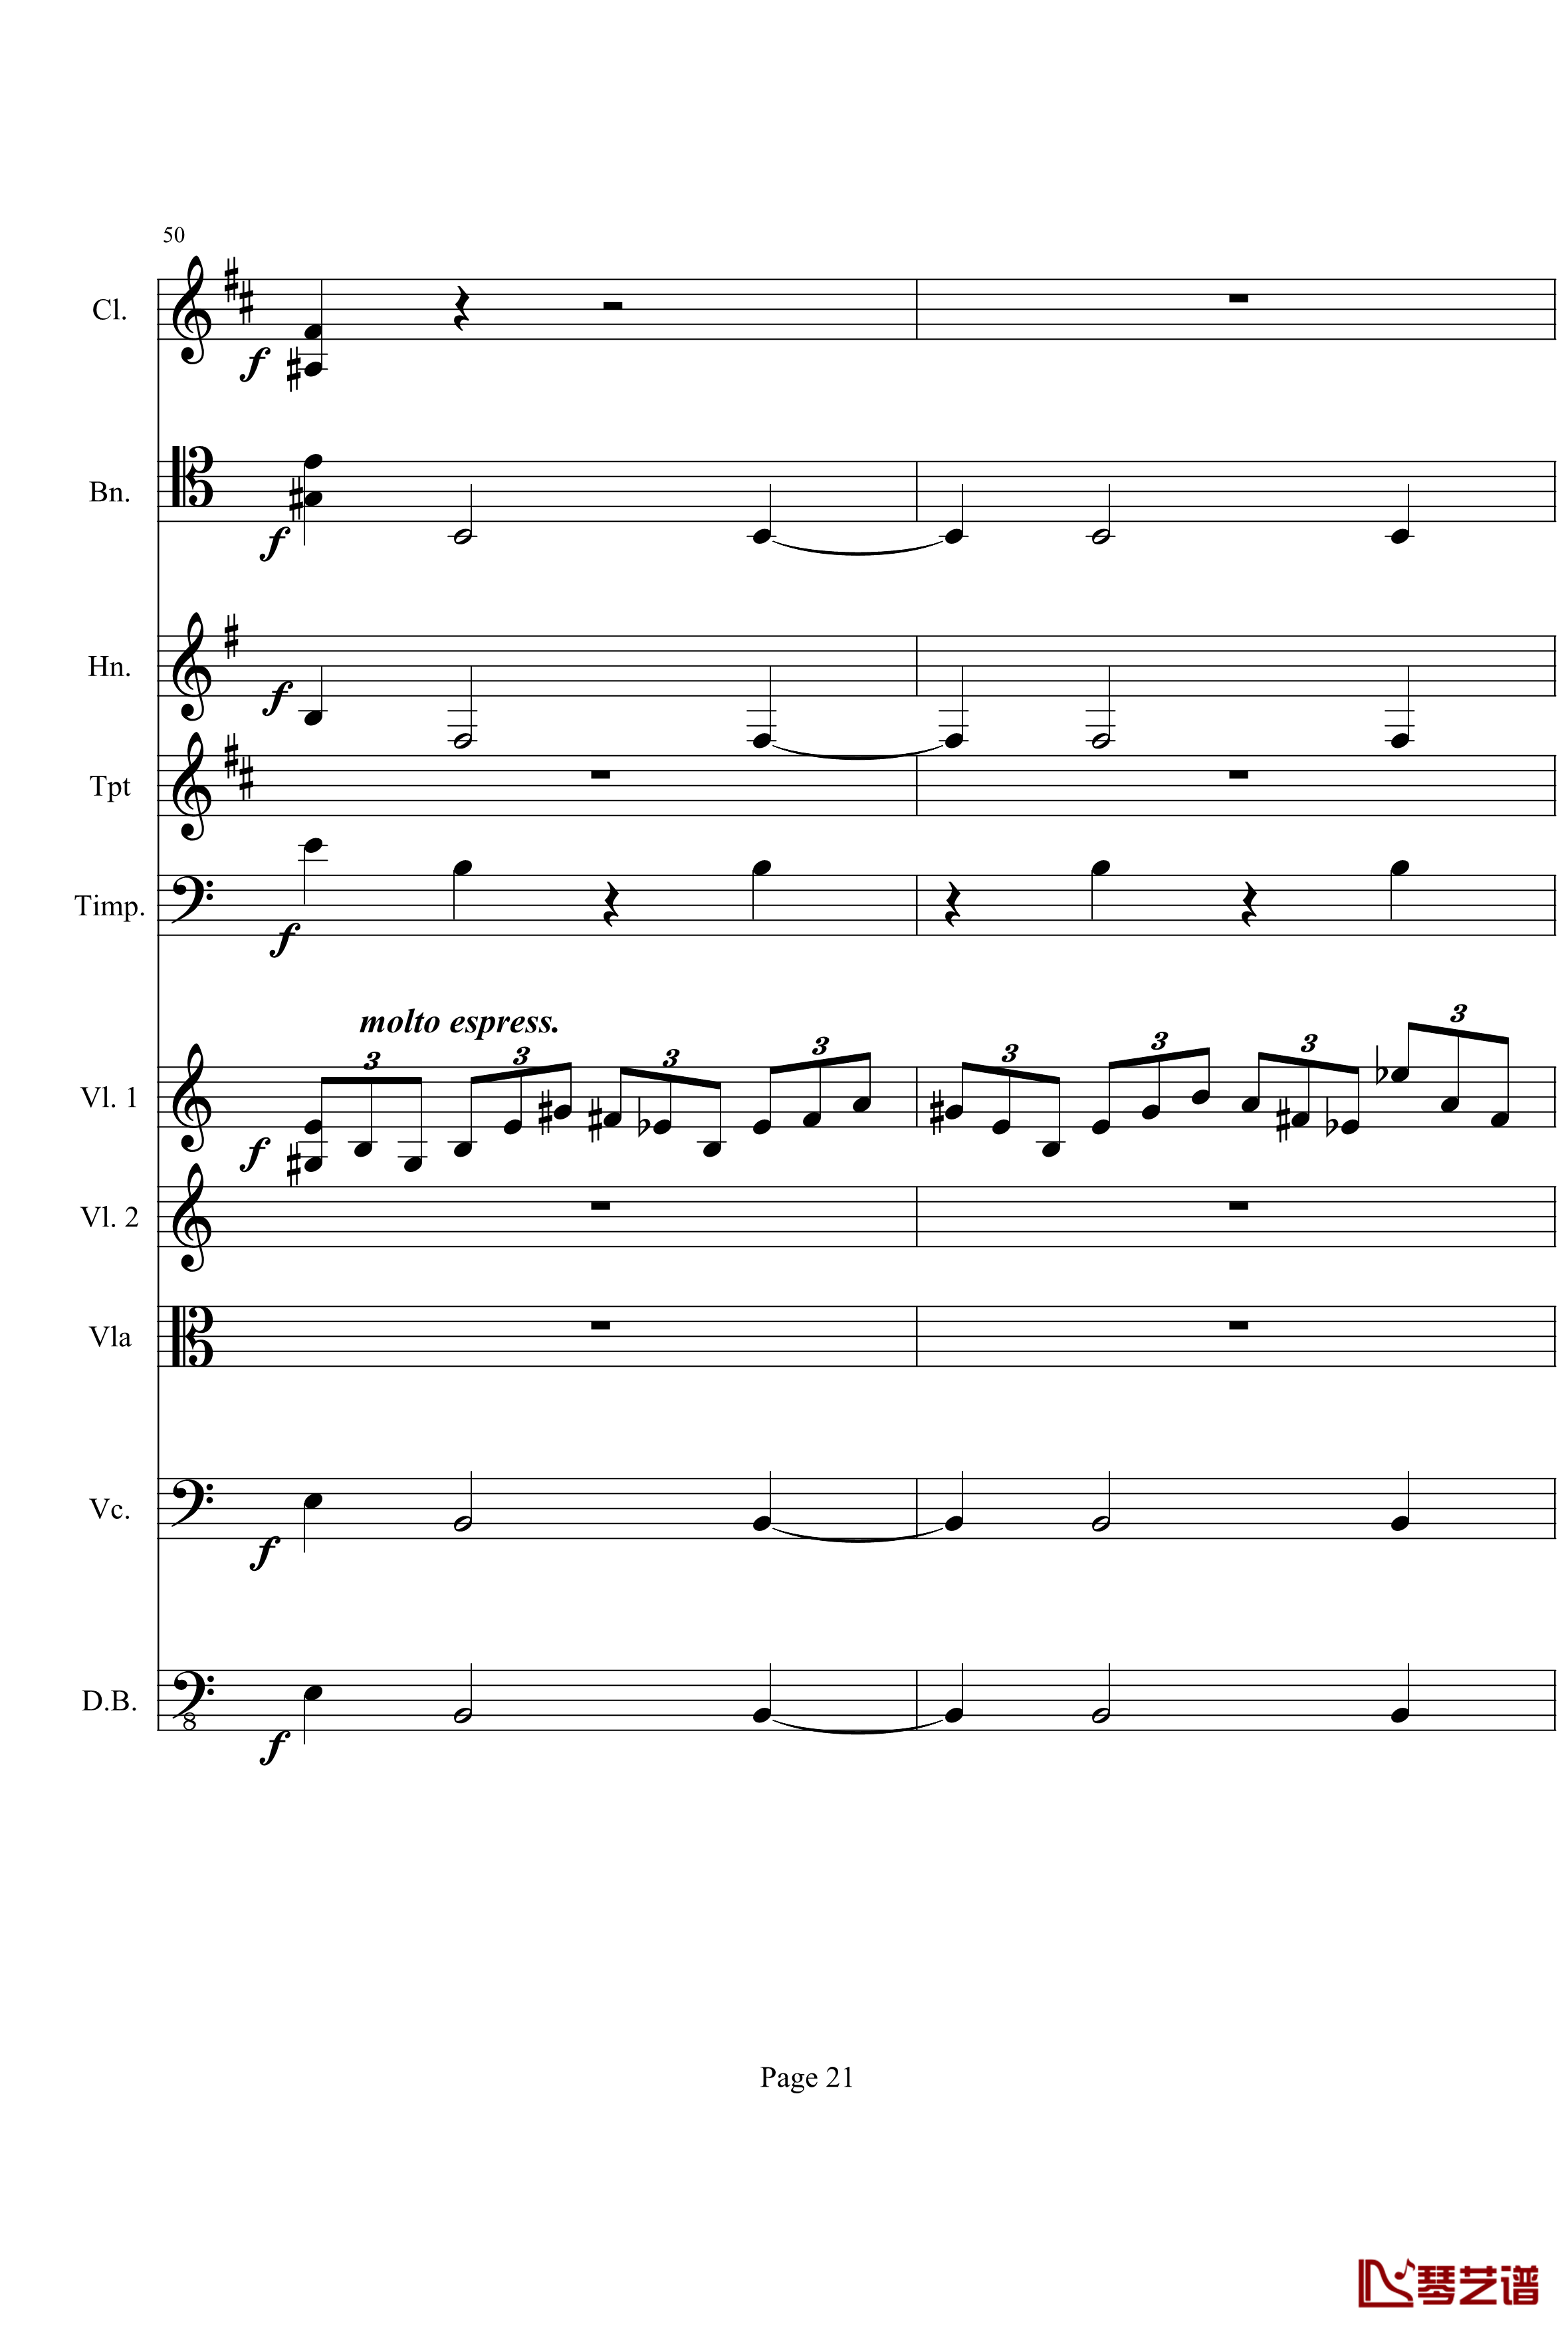 奏鸣曲之交响钢琴谱-第21-Ⅰ-贝多芬-beethoven21